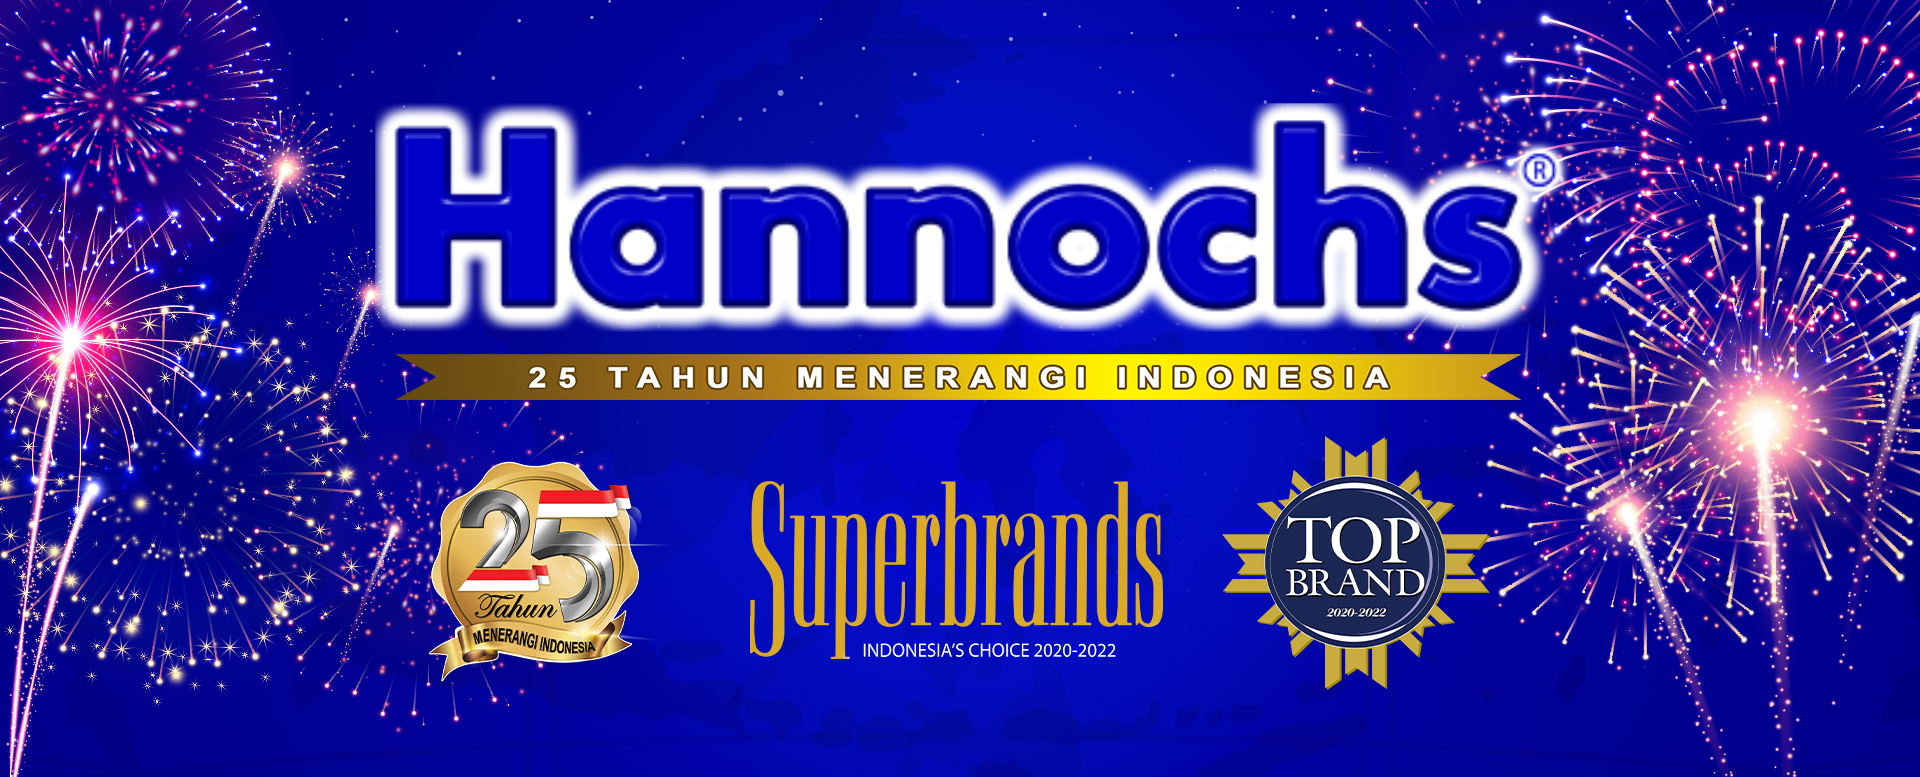 Hannochs 25 Years of Lighting Indonesia